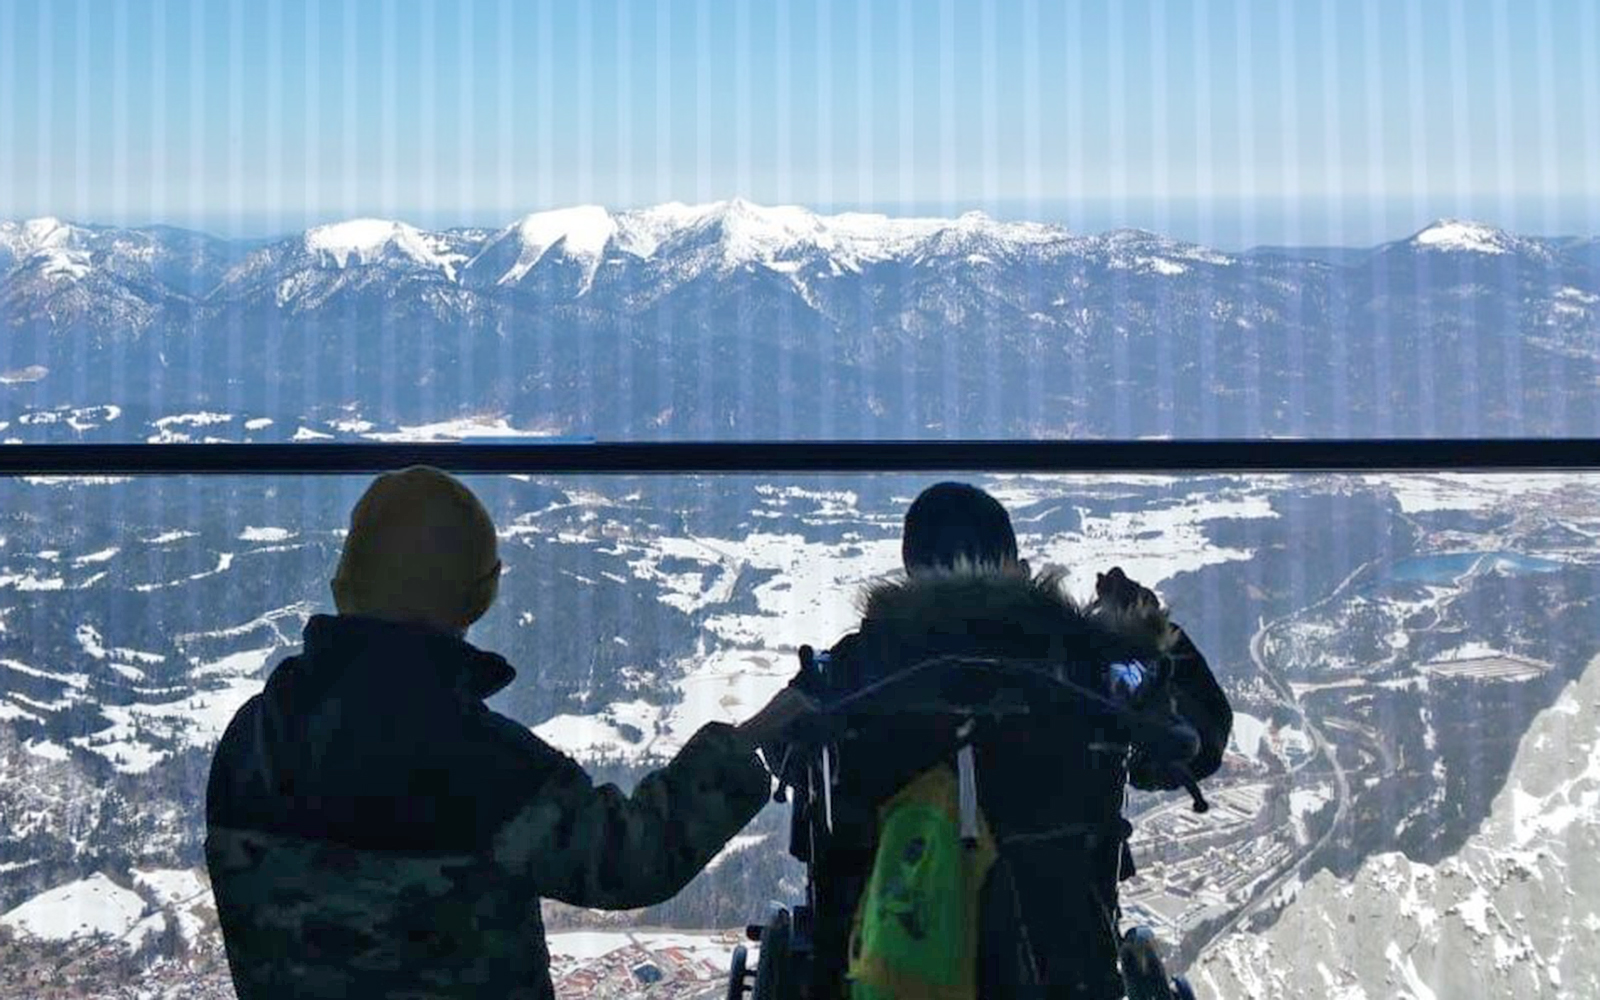 Zwei Personen, wurden von hinten fotografiert, als sie an einer Scheibe eines Ausblickpunktes auf einem Berg stehen. Vor den Personen erstreckt sich eine weite Landschaft, an dessen hinterem Ende hohe Berge aufragen.